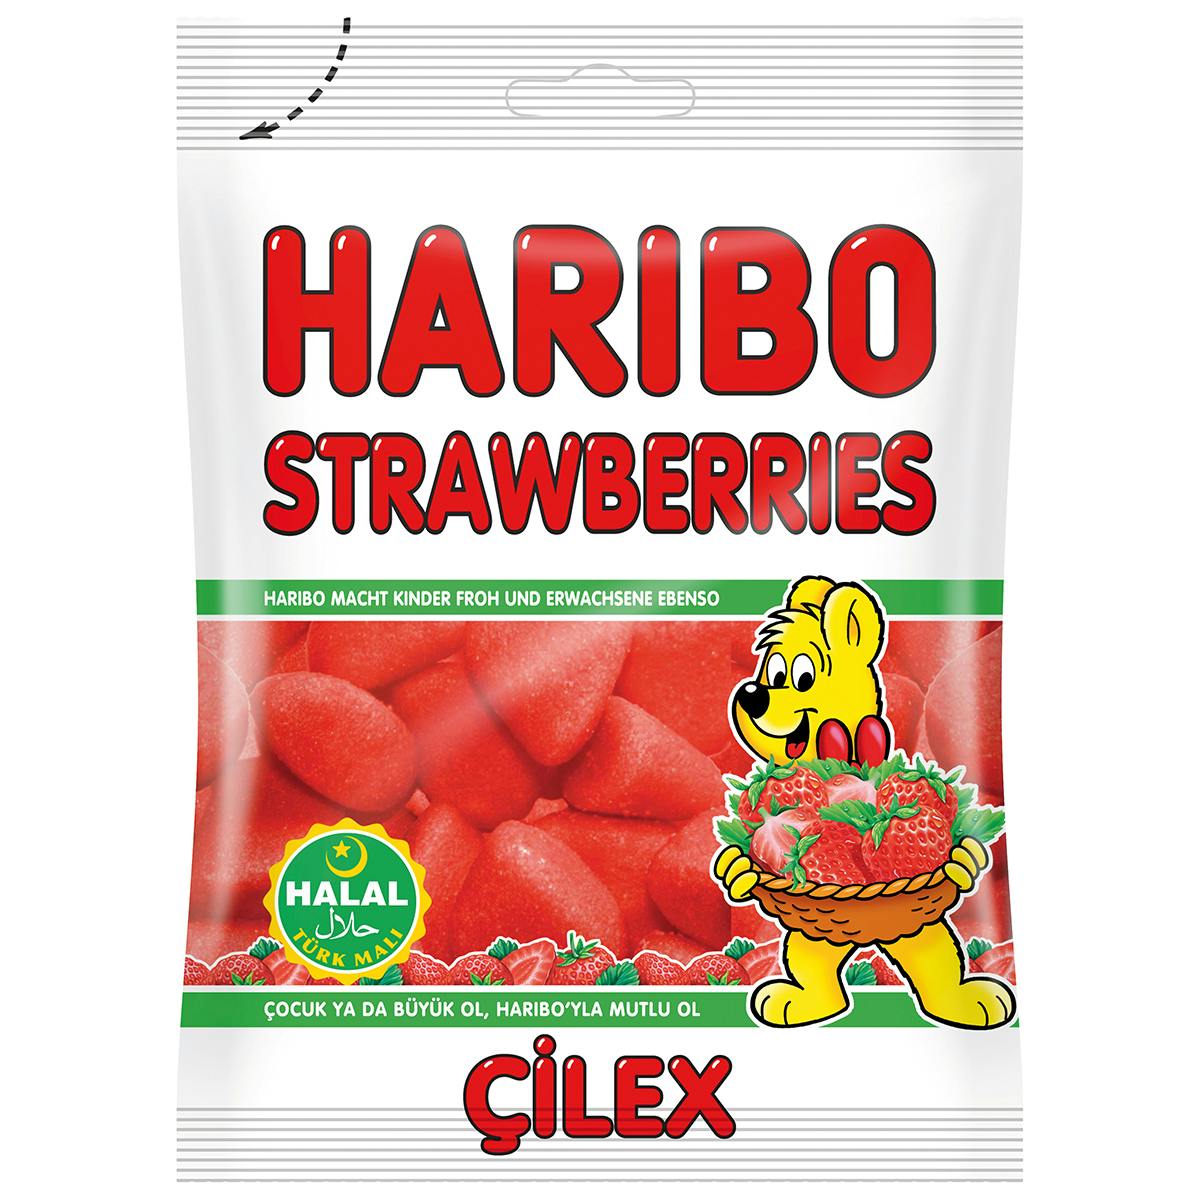 HARIBO Strawberries